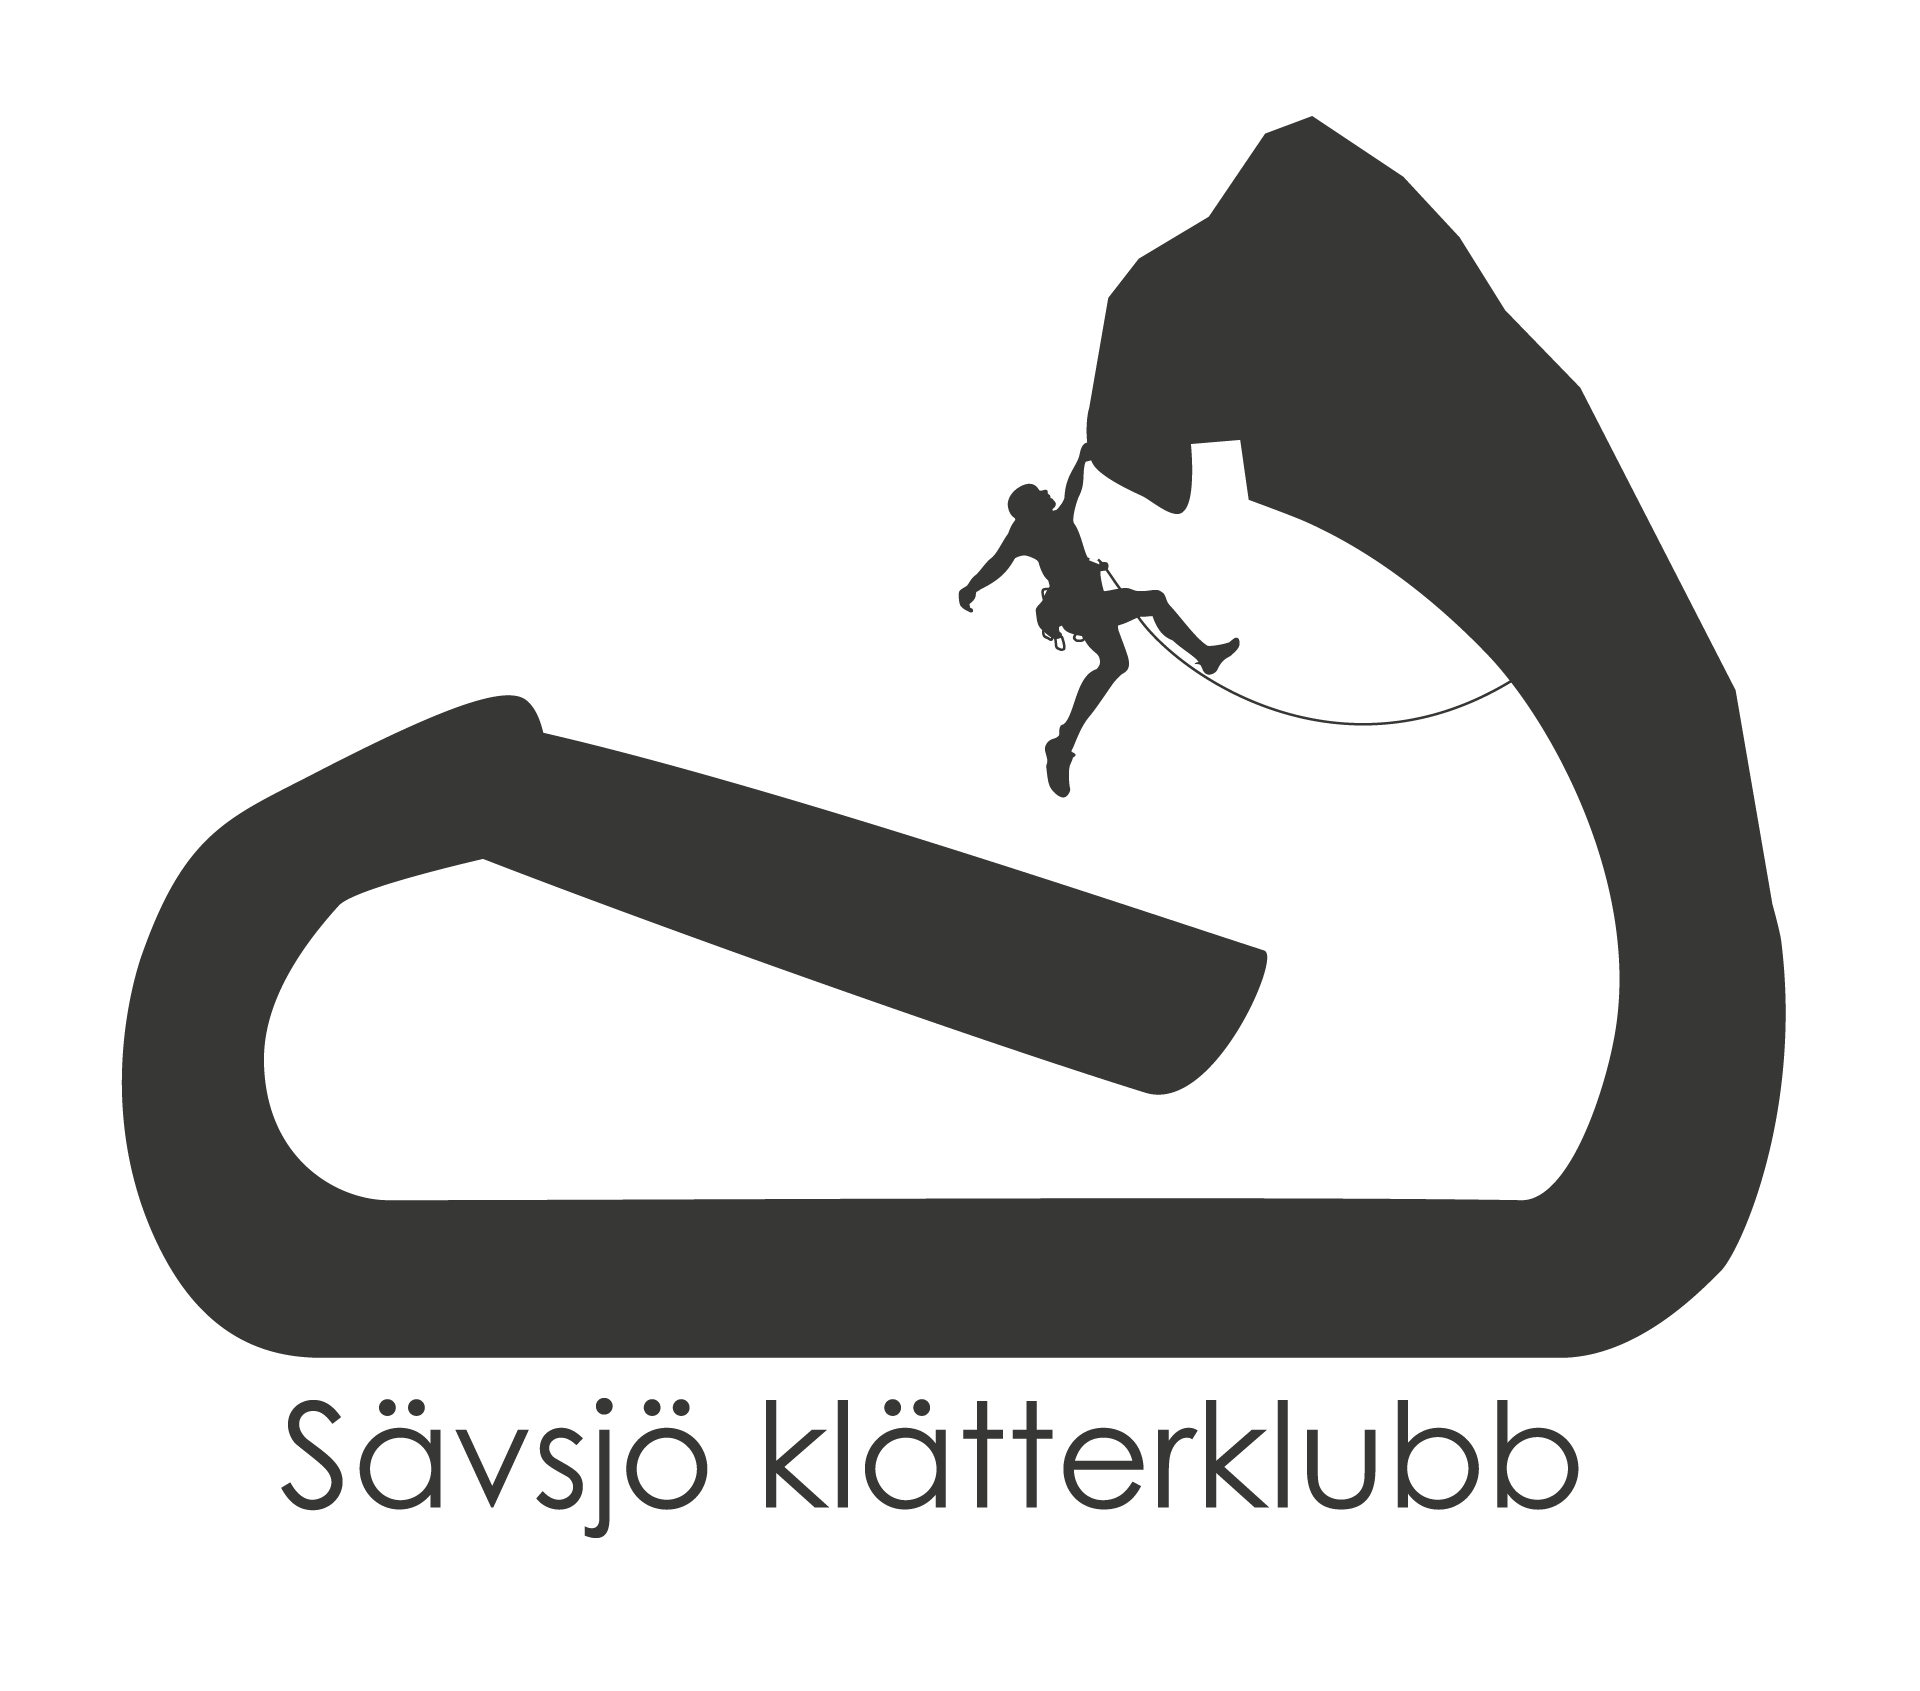 Sävsjö Klätterklubb